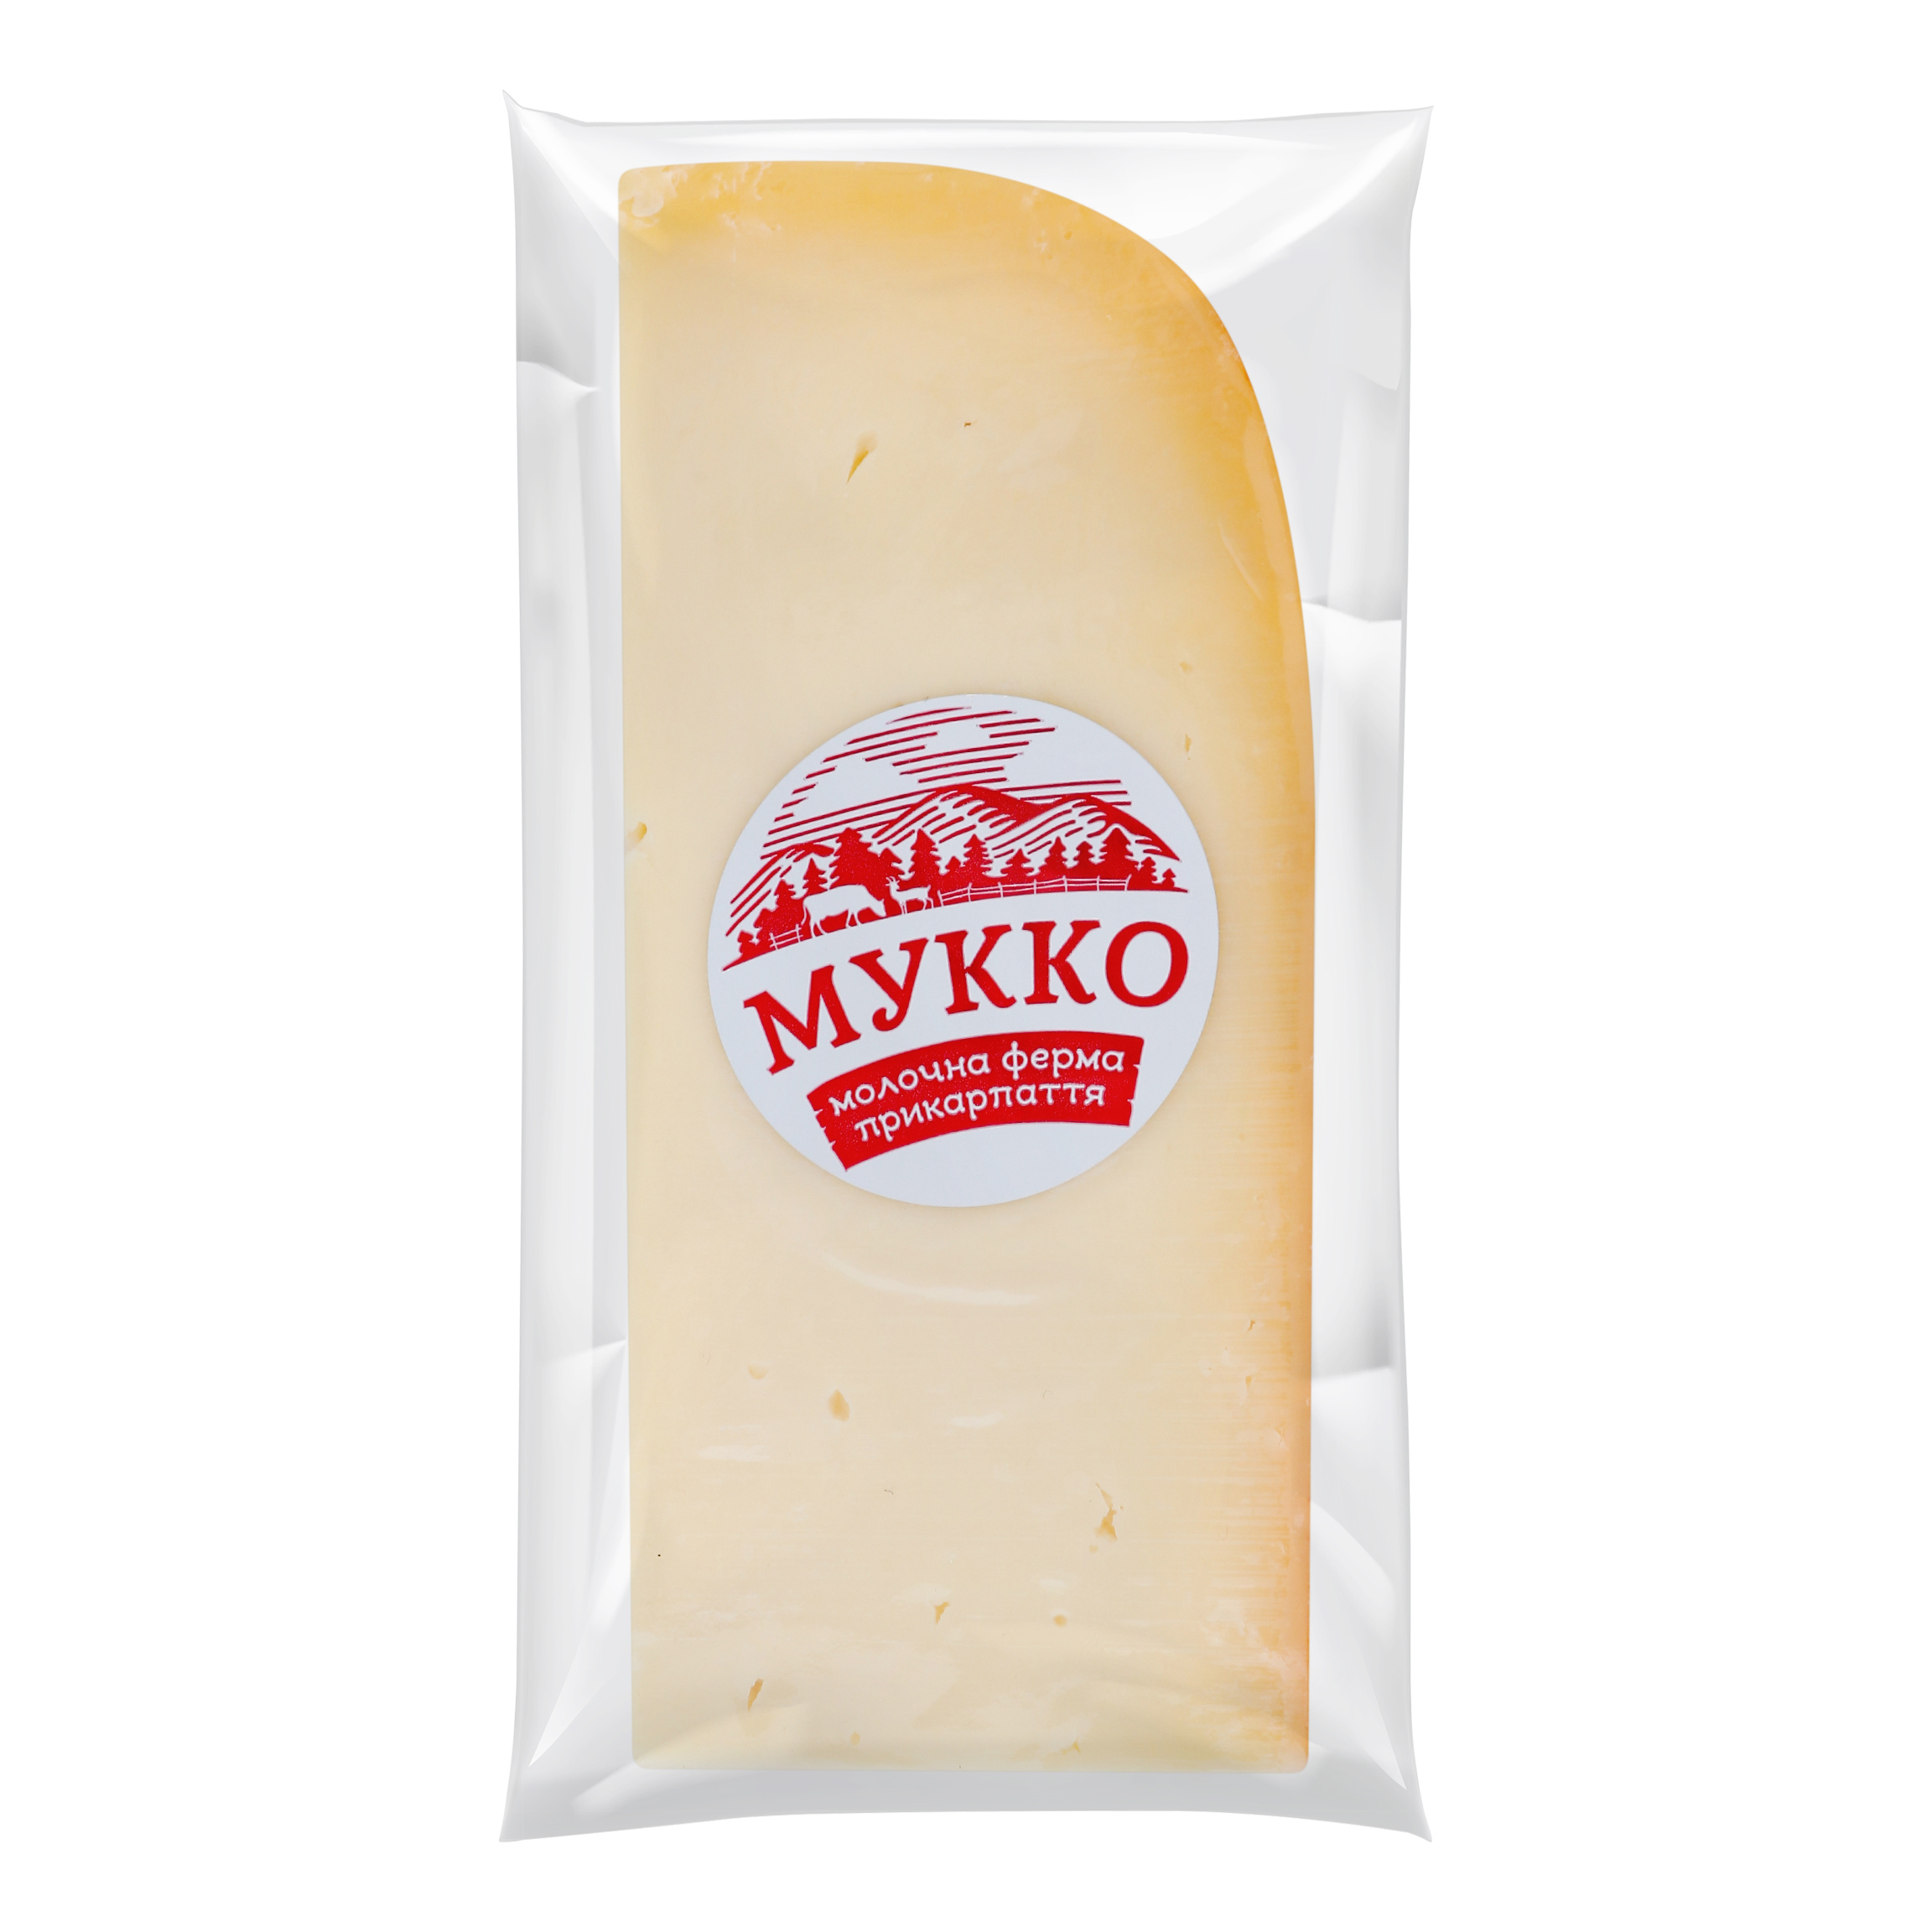 Mukko farm cheese 50.2%